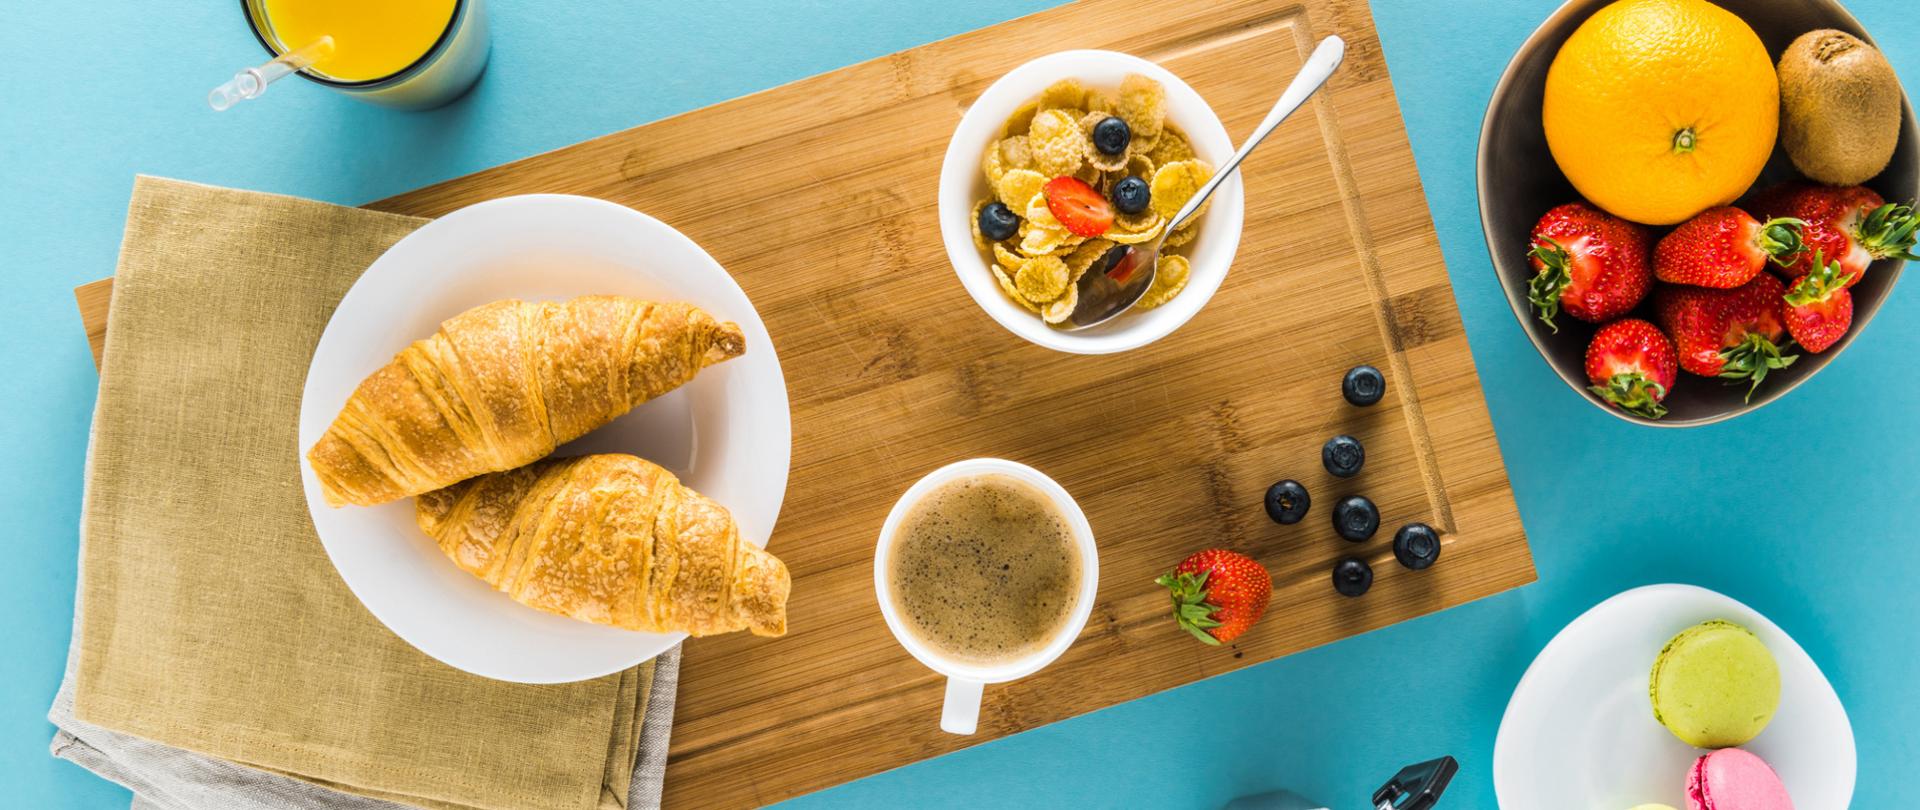 Na zdjęciu widoczne jest śniadanie. Na desce do krojenia leżą rogale, płatki, owoce oraz stoi kawa. Ponadto obok jest kawiarka, miska z owocami, makaroniki i sok pomarańczowy. Tło jest niebieskie.